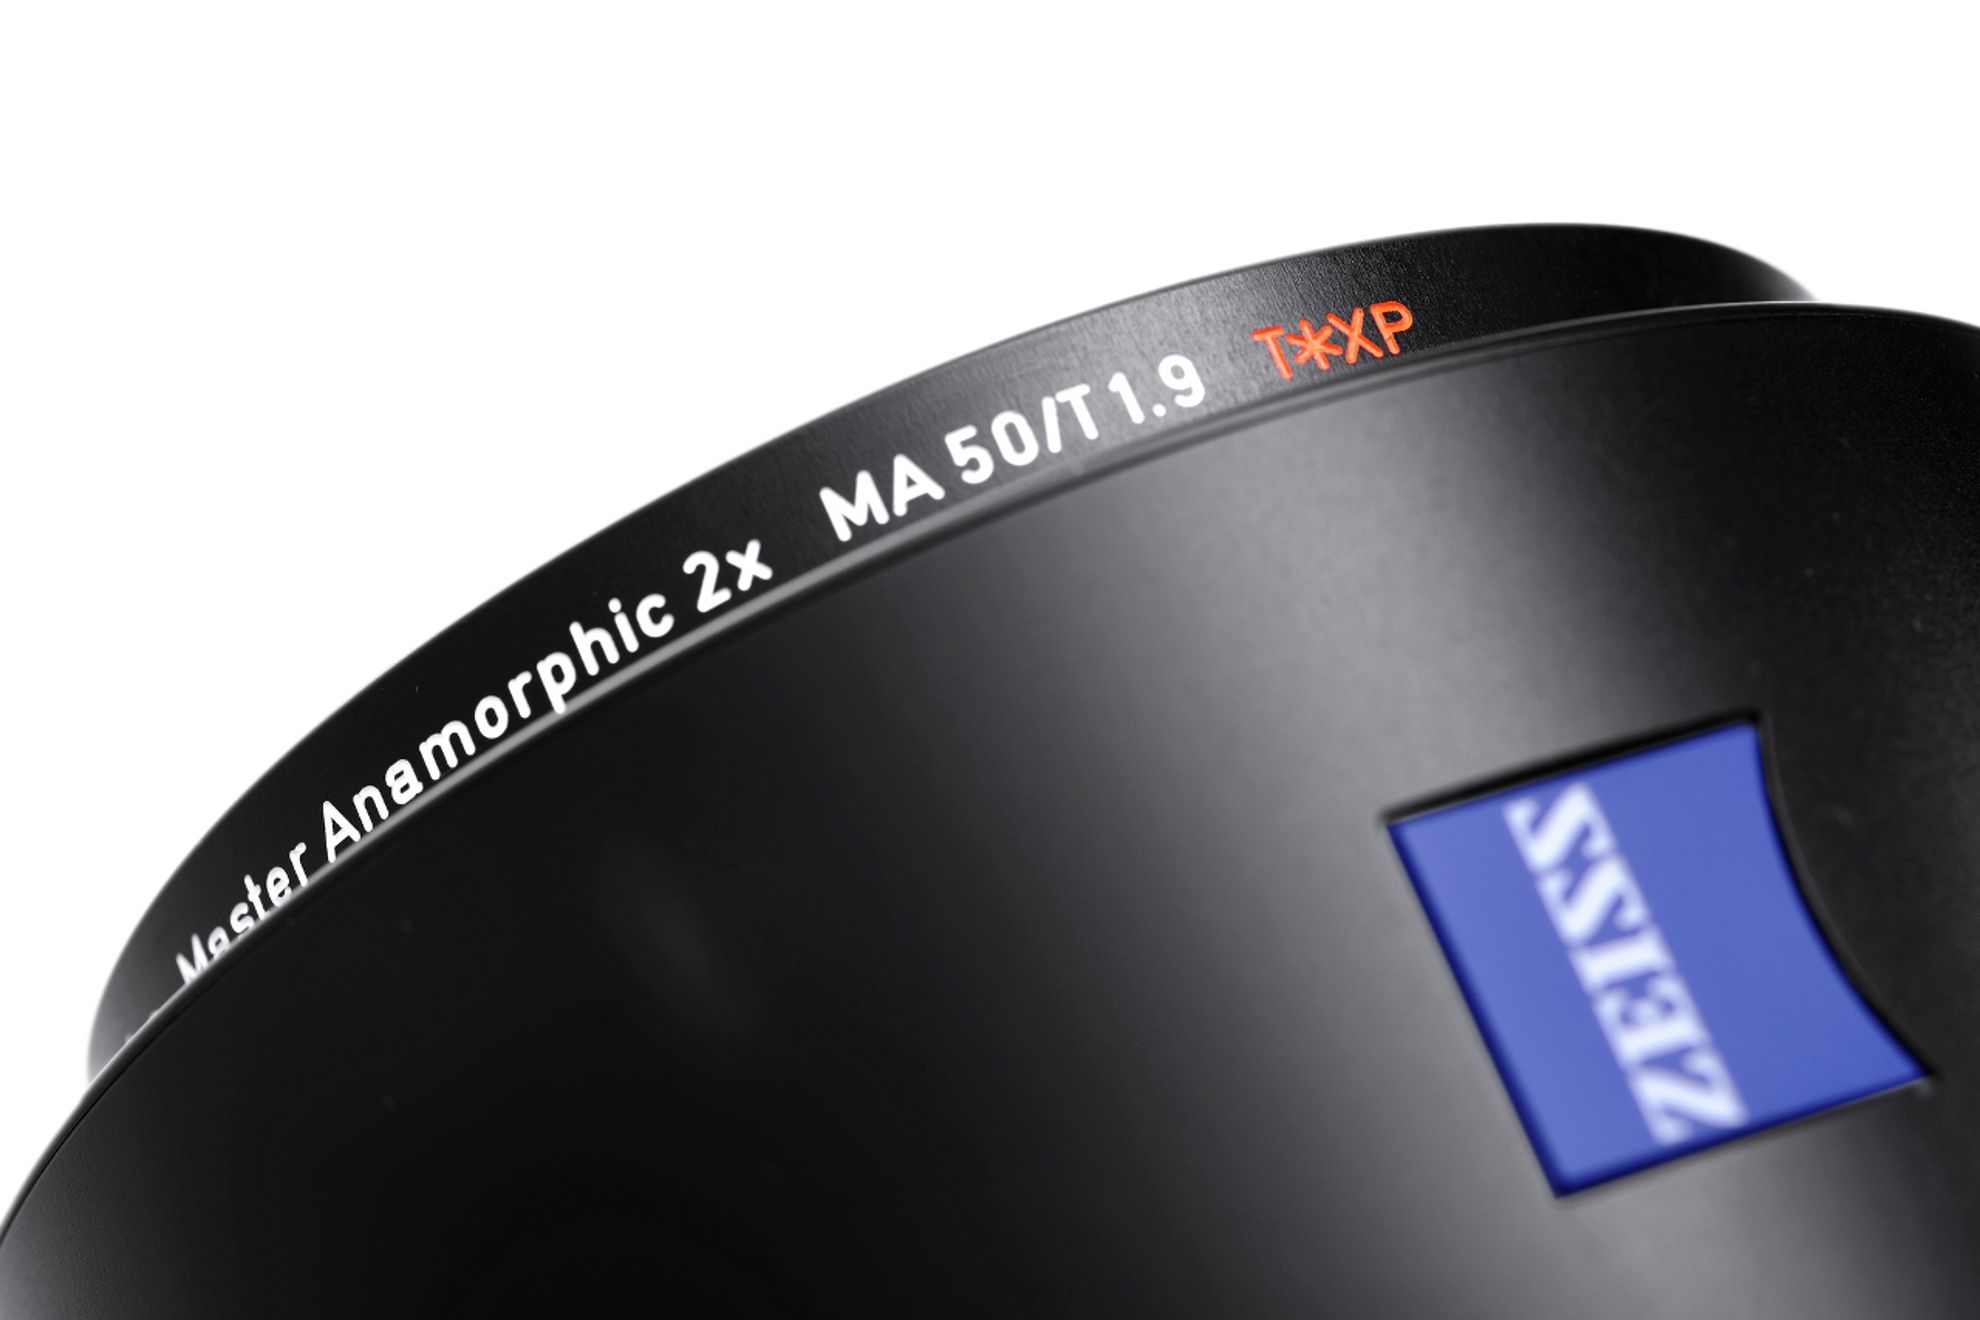 ARRI / ZEISS Master Anamorphic Lenses Revolutionary new